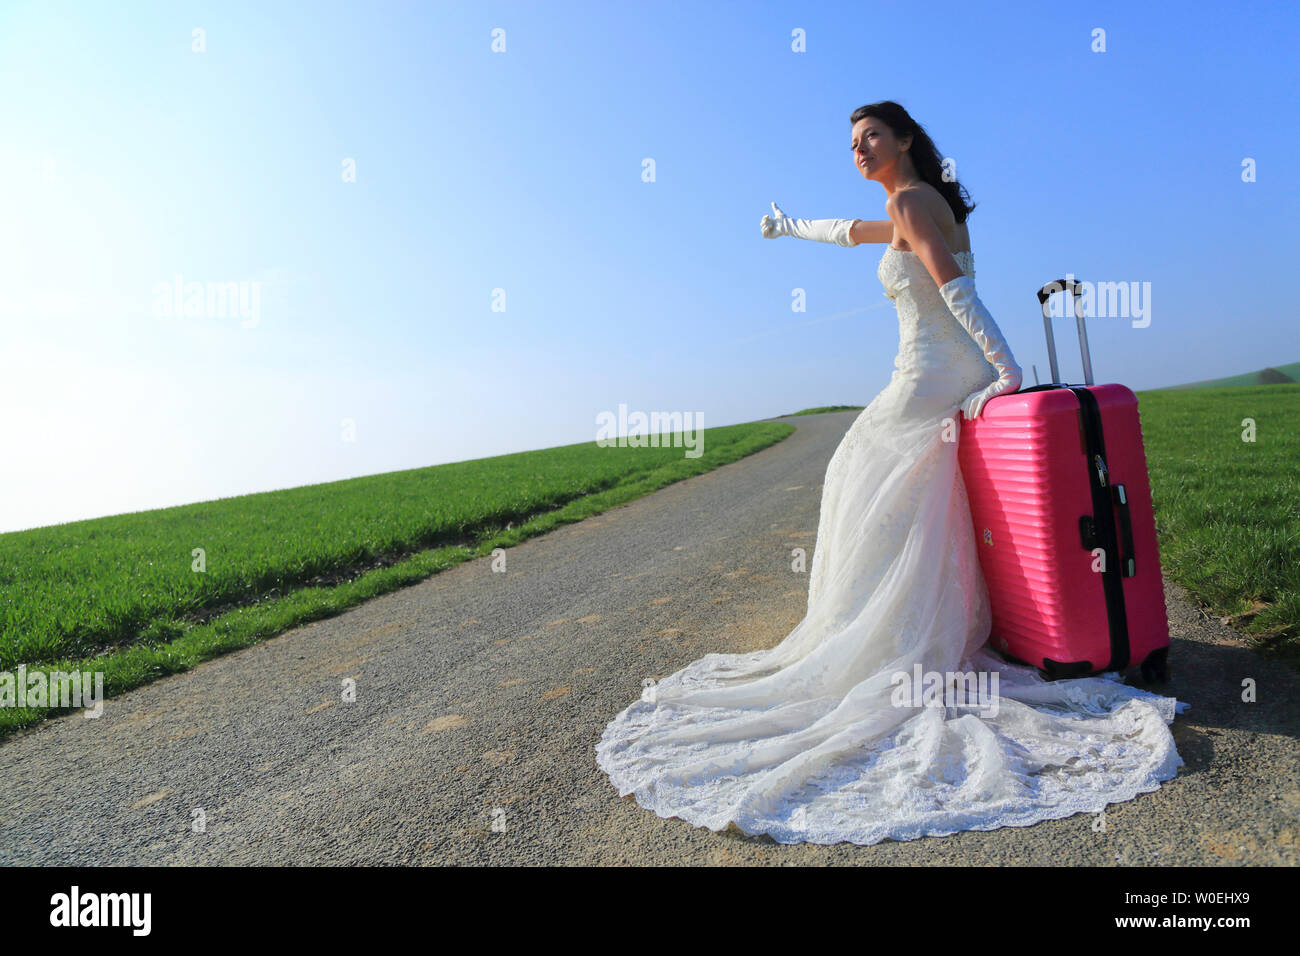 L'auto-stop avec valise rose mariée Banque D'Images